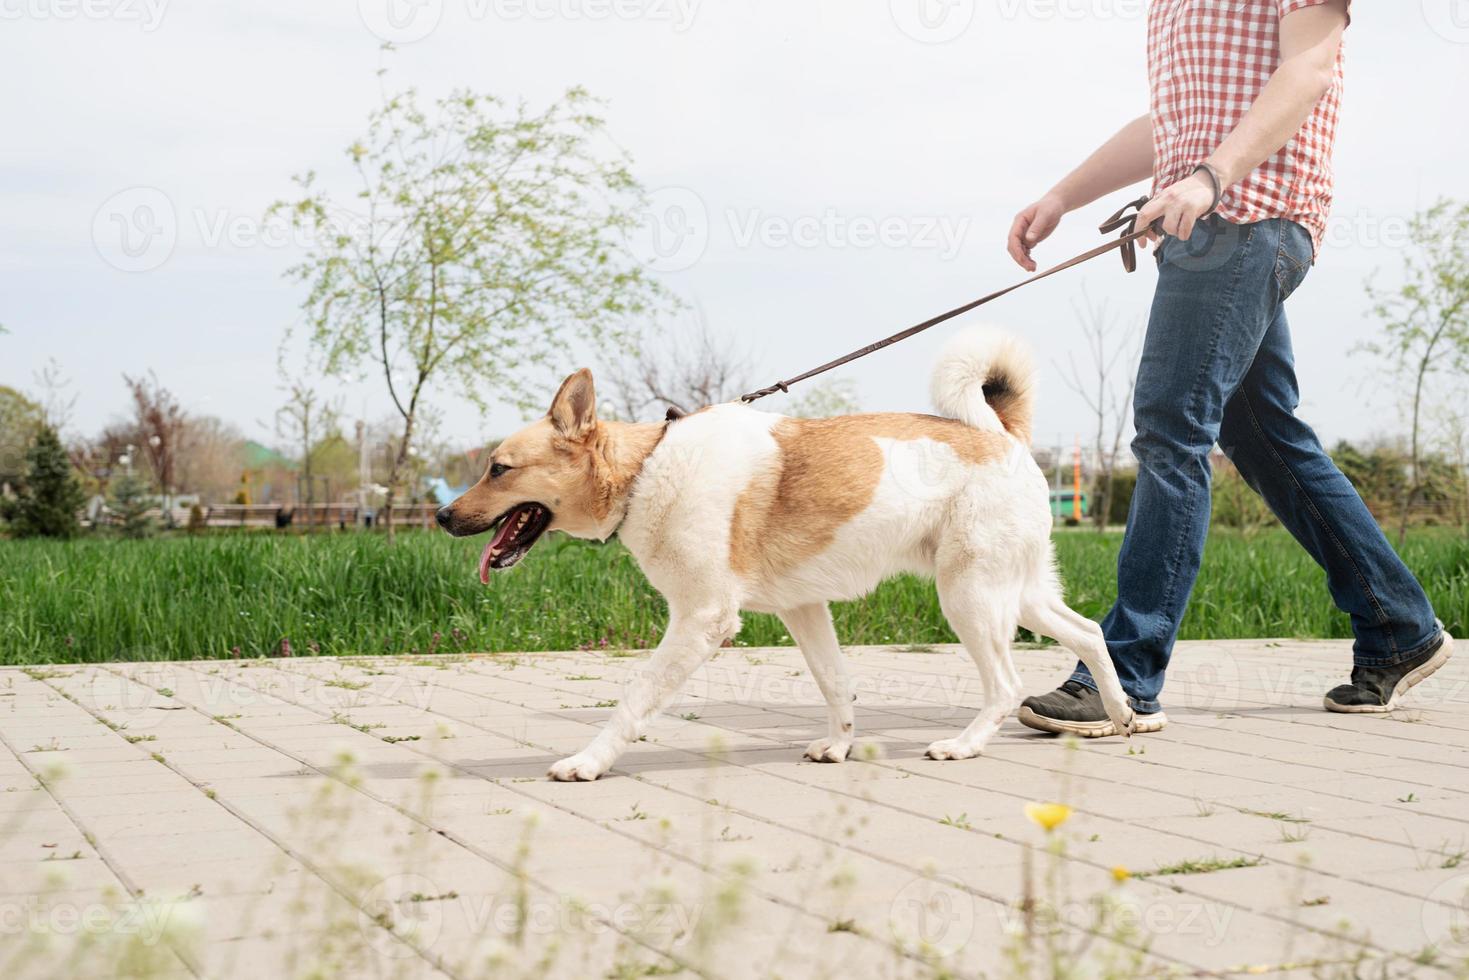 profielfoto van een jonge man die op een zonnige lentedag met zijn hond in een park loopt foto